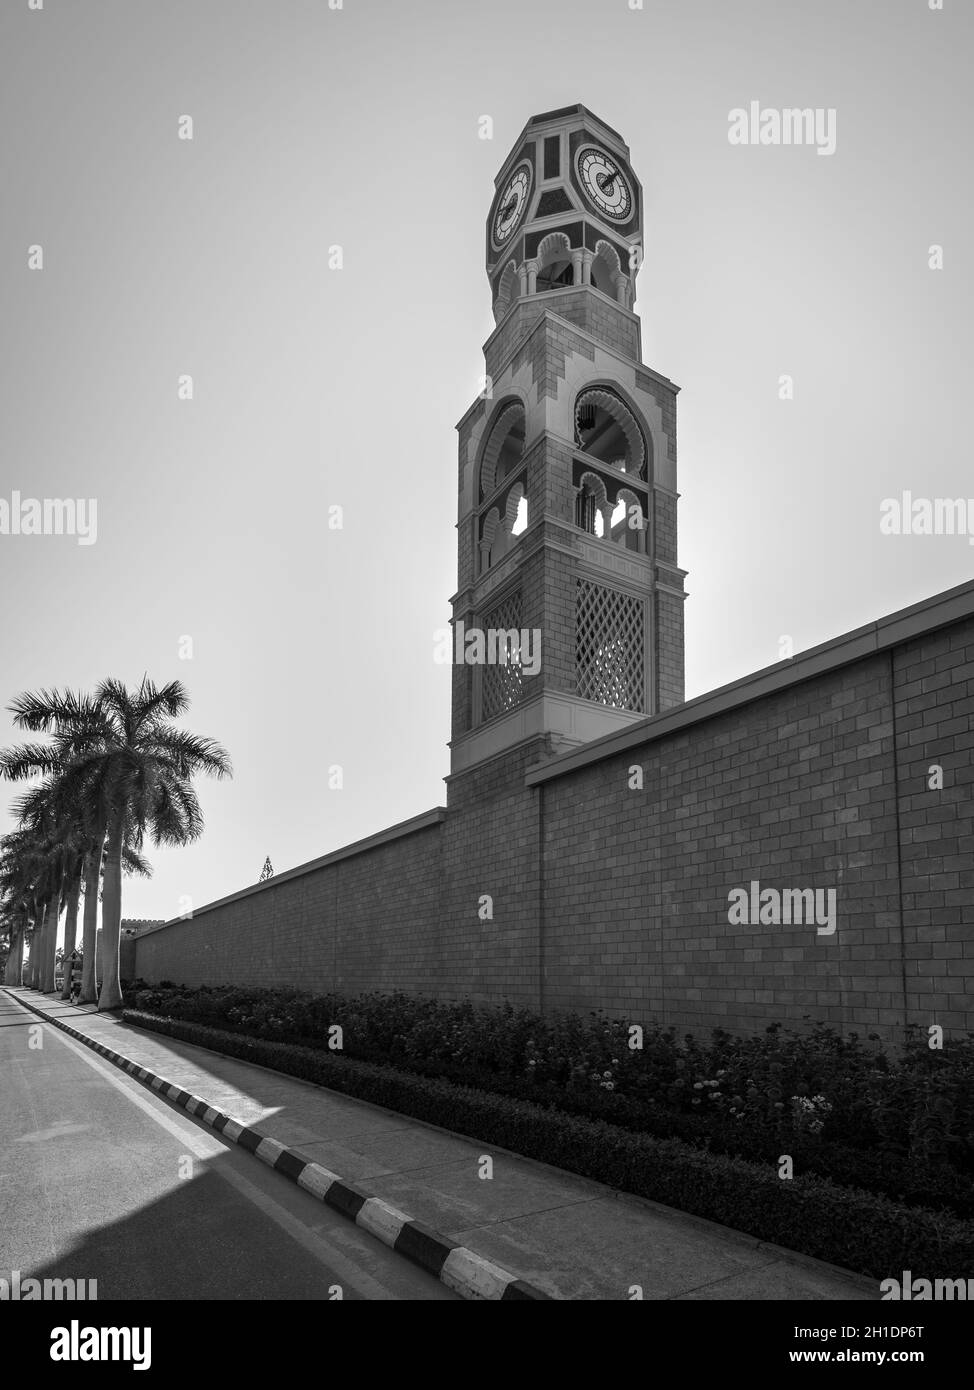 Mascate, Sultanat d'Oman - 12 novembre 2017 : tour dans le Sultan Qaboos bin Said Al-Husn Palace à Salalah, Oman, province de Dhofar. Le noir et blanc Banque D'Images